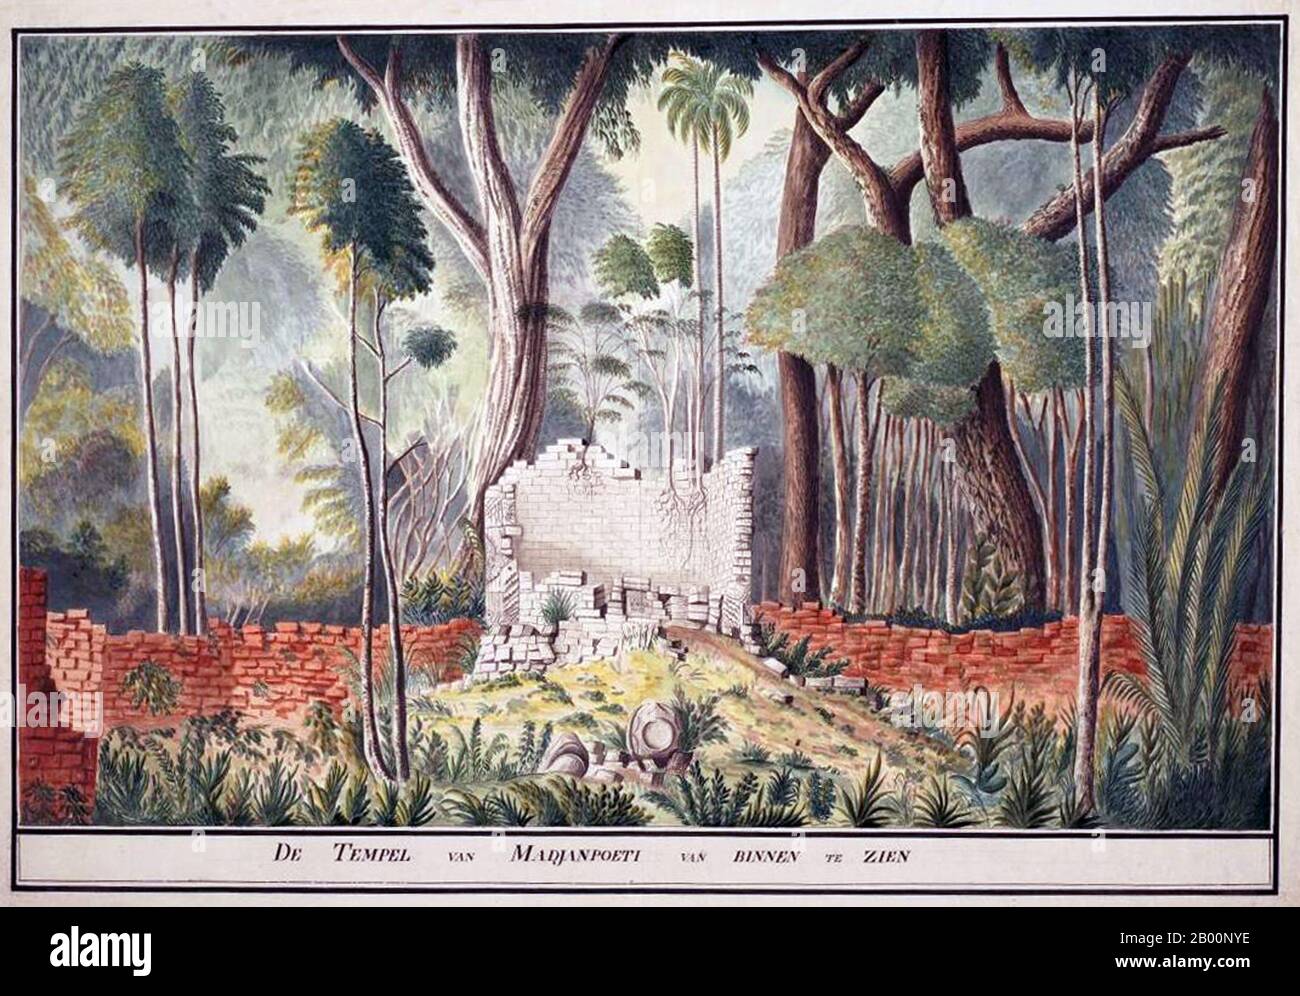 Indonesien: Madura, Innere des Tempels von Madjanpoeti. Aquarellmalerei eines unbekannten Künstlers, Ende des 18. Jahrhunderts. Ab dem 7. Jahrhundert n. Chr. blühte das mächtige Srivijaya-Marinerreich in Indonesien als Folge des Handels und der Einflüsse des Hinduismus und Buddhismus, die mit ihm aus Malaya importiert wurden. Zwischen dem 8. Und 10. Jahrhundert u.Z. blühten und gingen die landwirtschaftlichen buddhistischen Sailendra- und Hindu-Mataram-Dynastien im Landesinneren von Java zurück und hinterließen große religiöse Monumente wie Sailendras Borobudur und Matarams Prambanan. Stockfoto